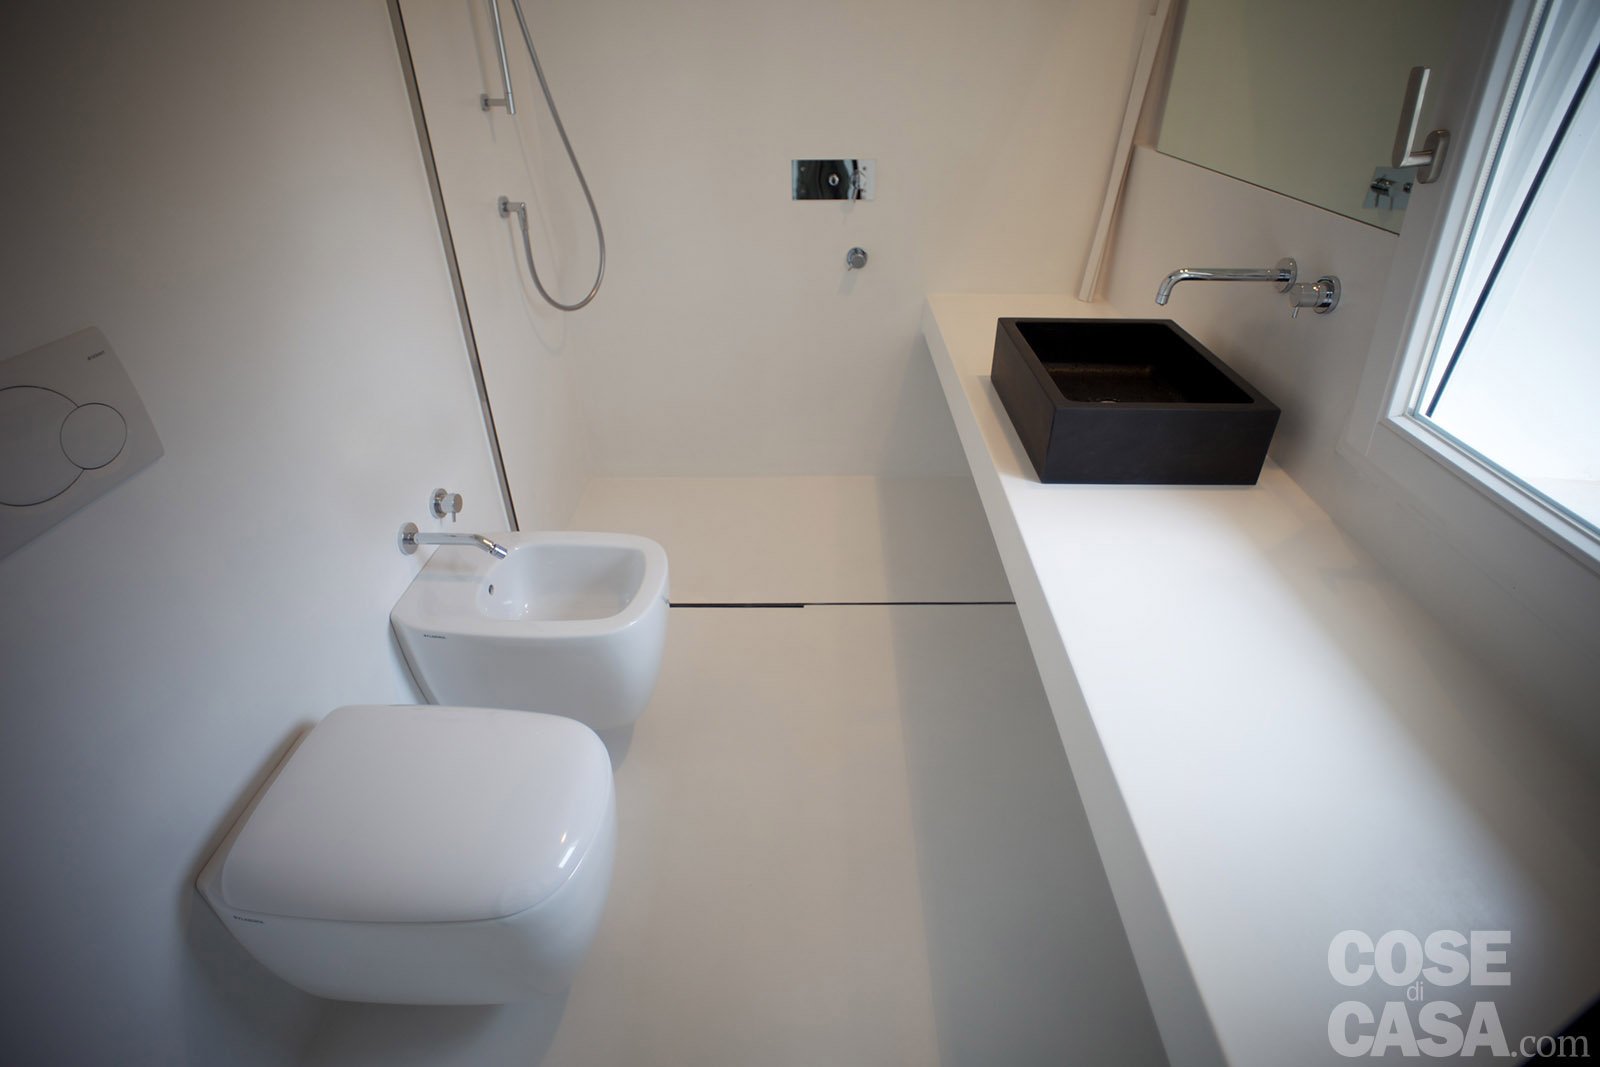 foto9-casa-bagno-sanitari-ok